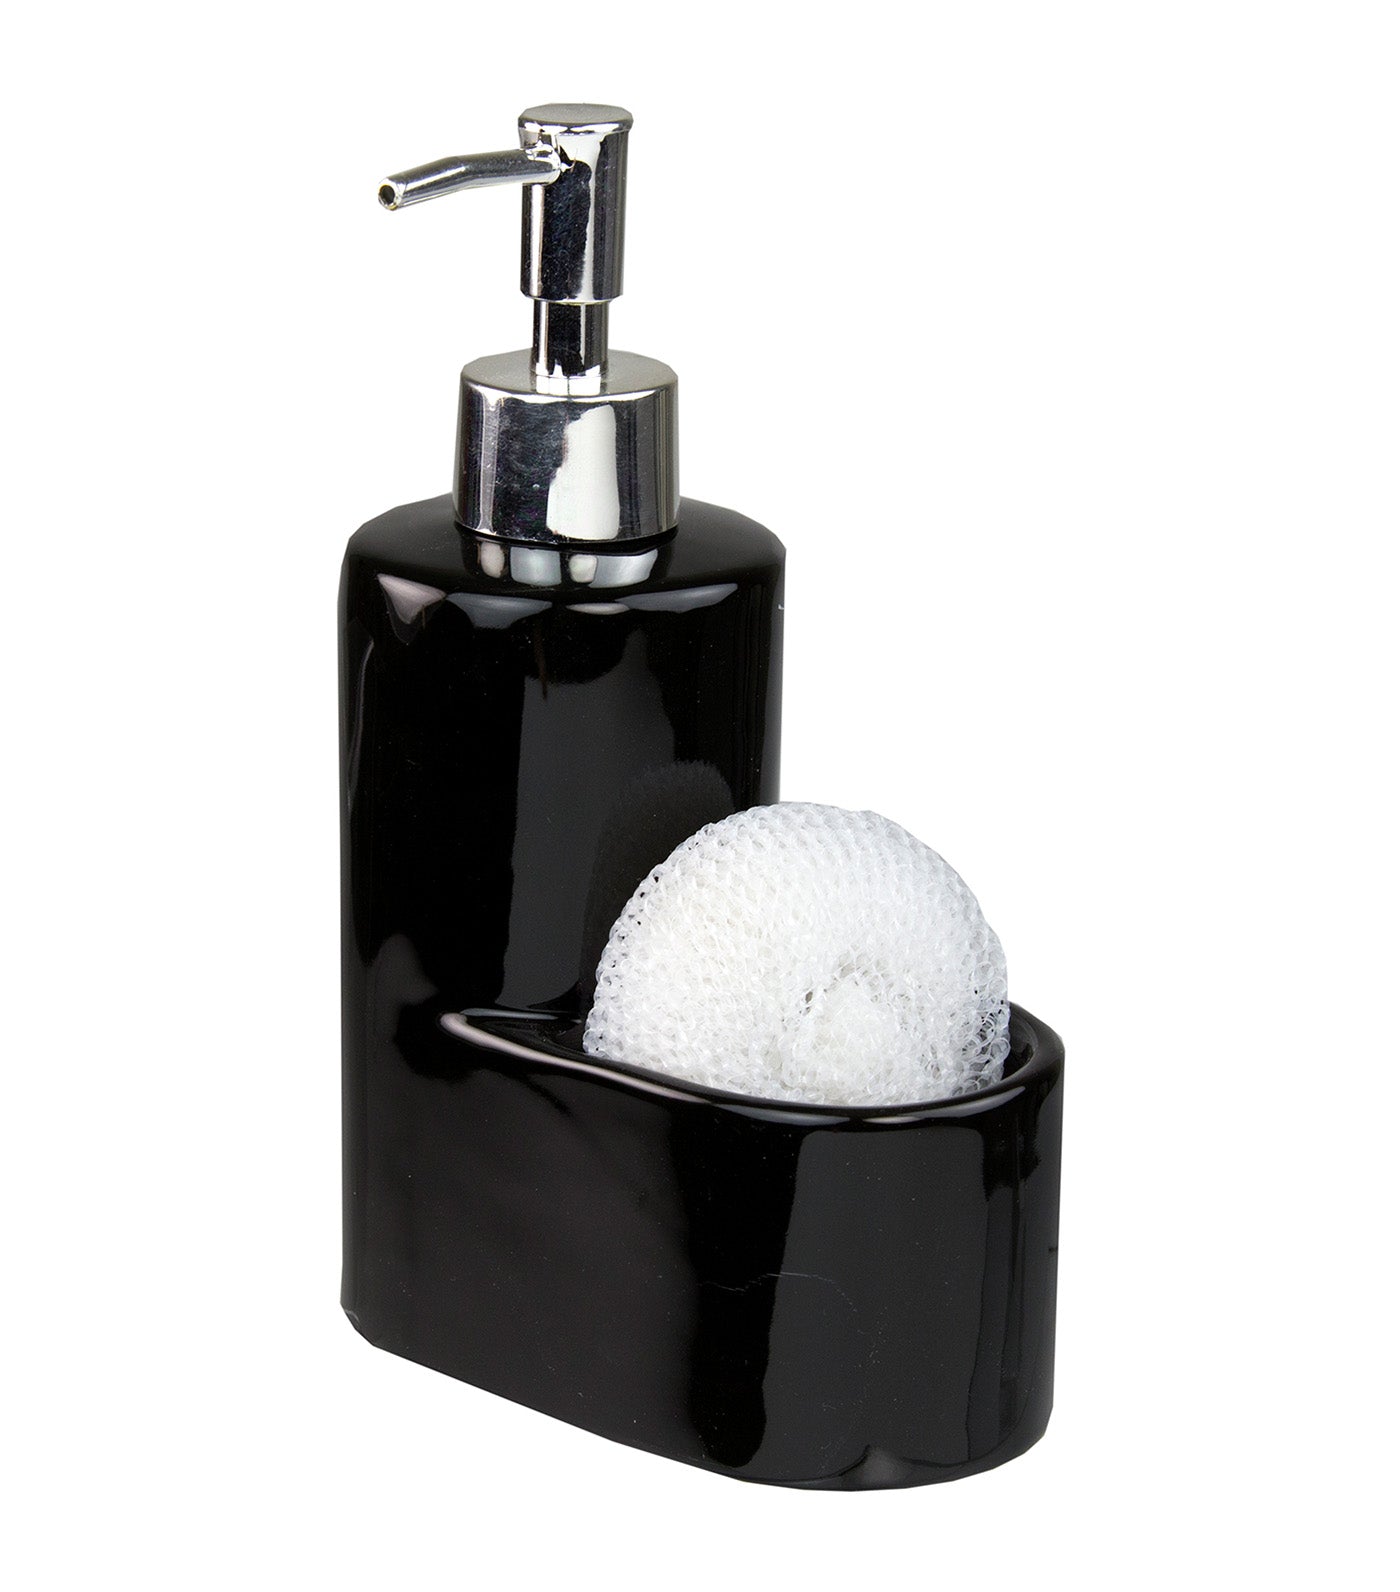 MakeRoom Soap Dispenser with Sponge Holder